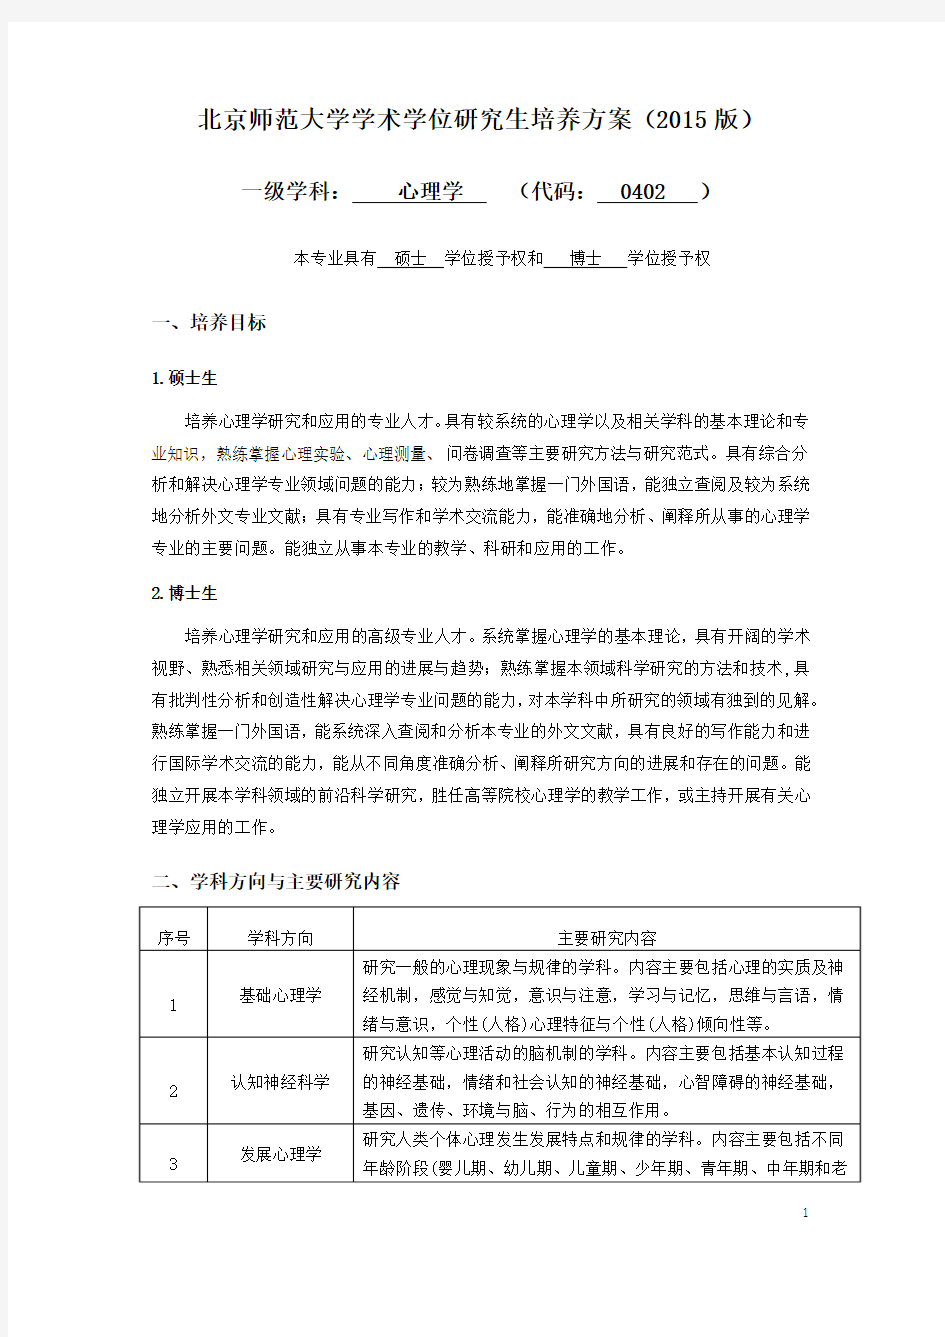 北京师范大学学术学位研究生培养方案(2015版)